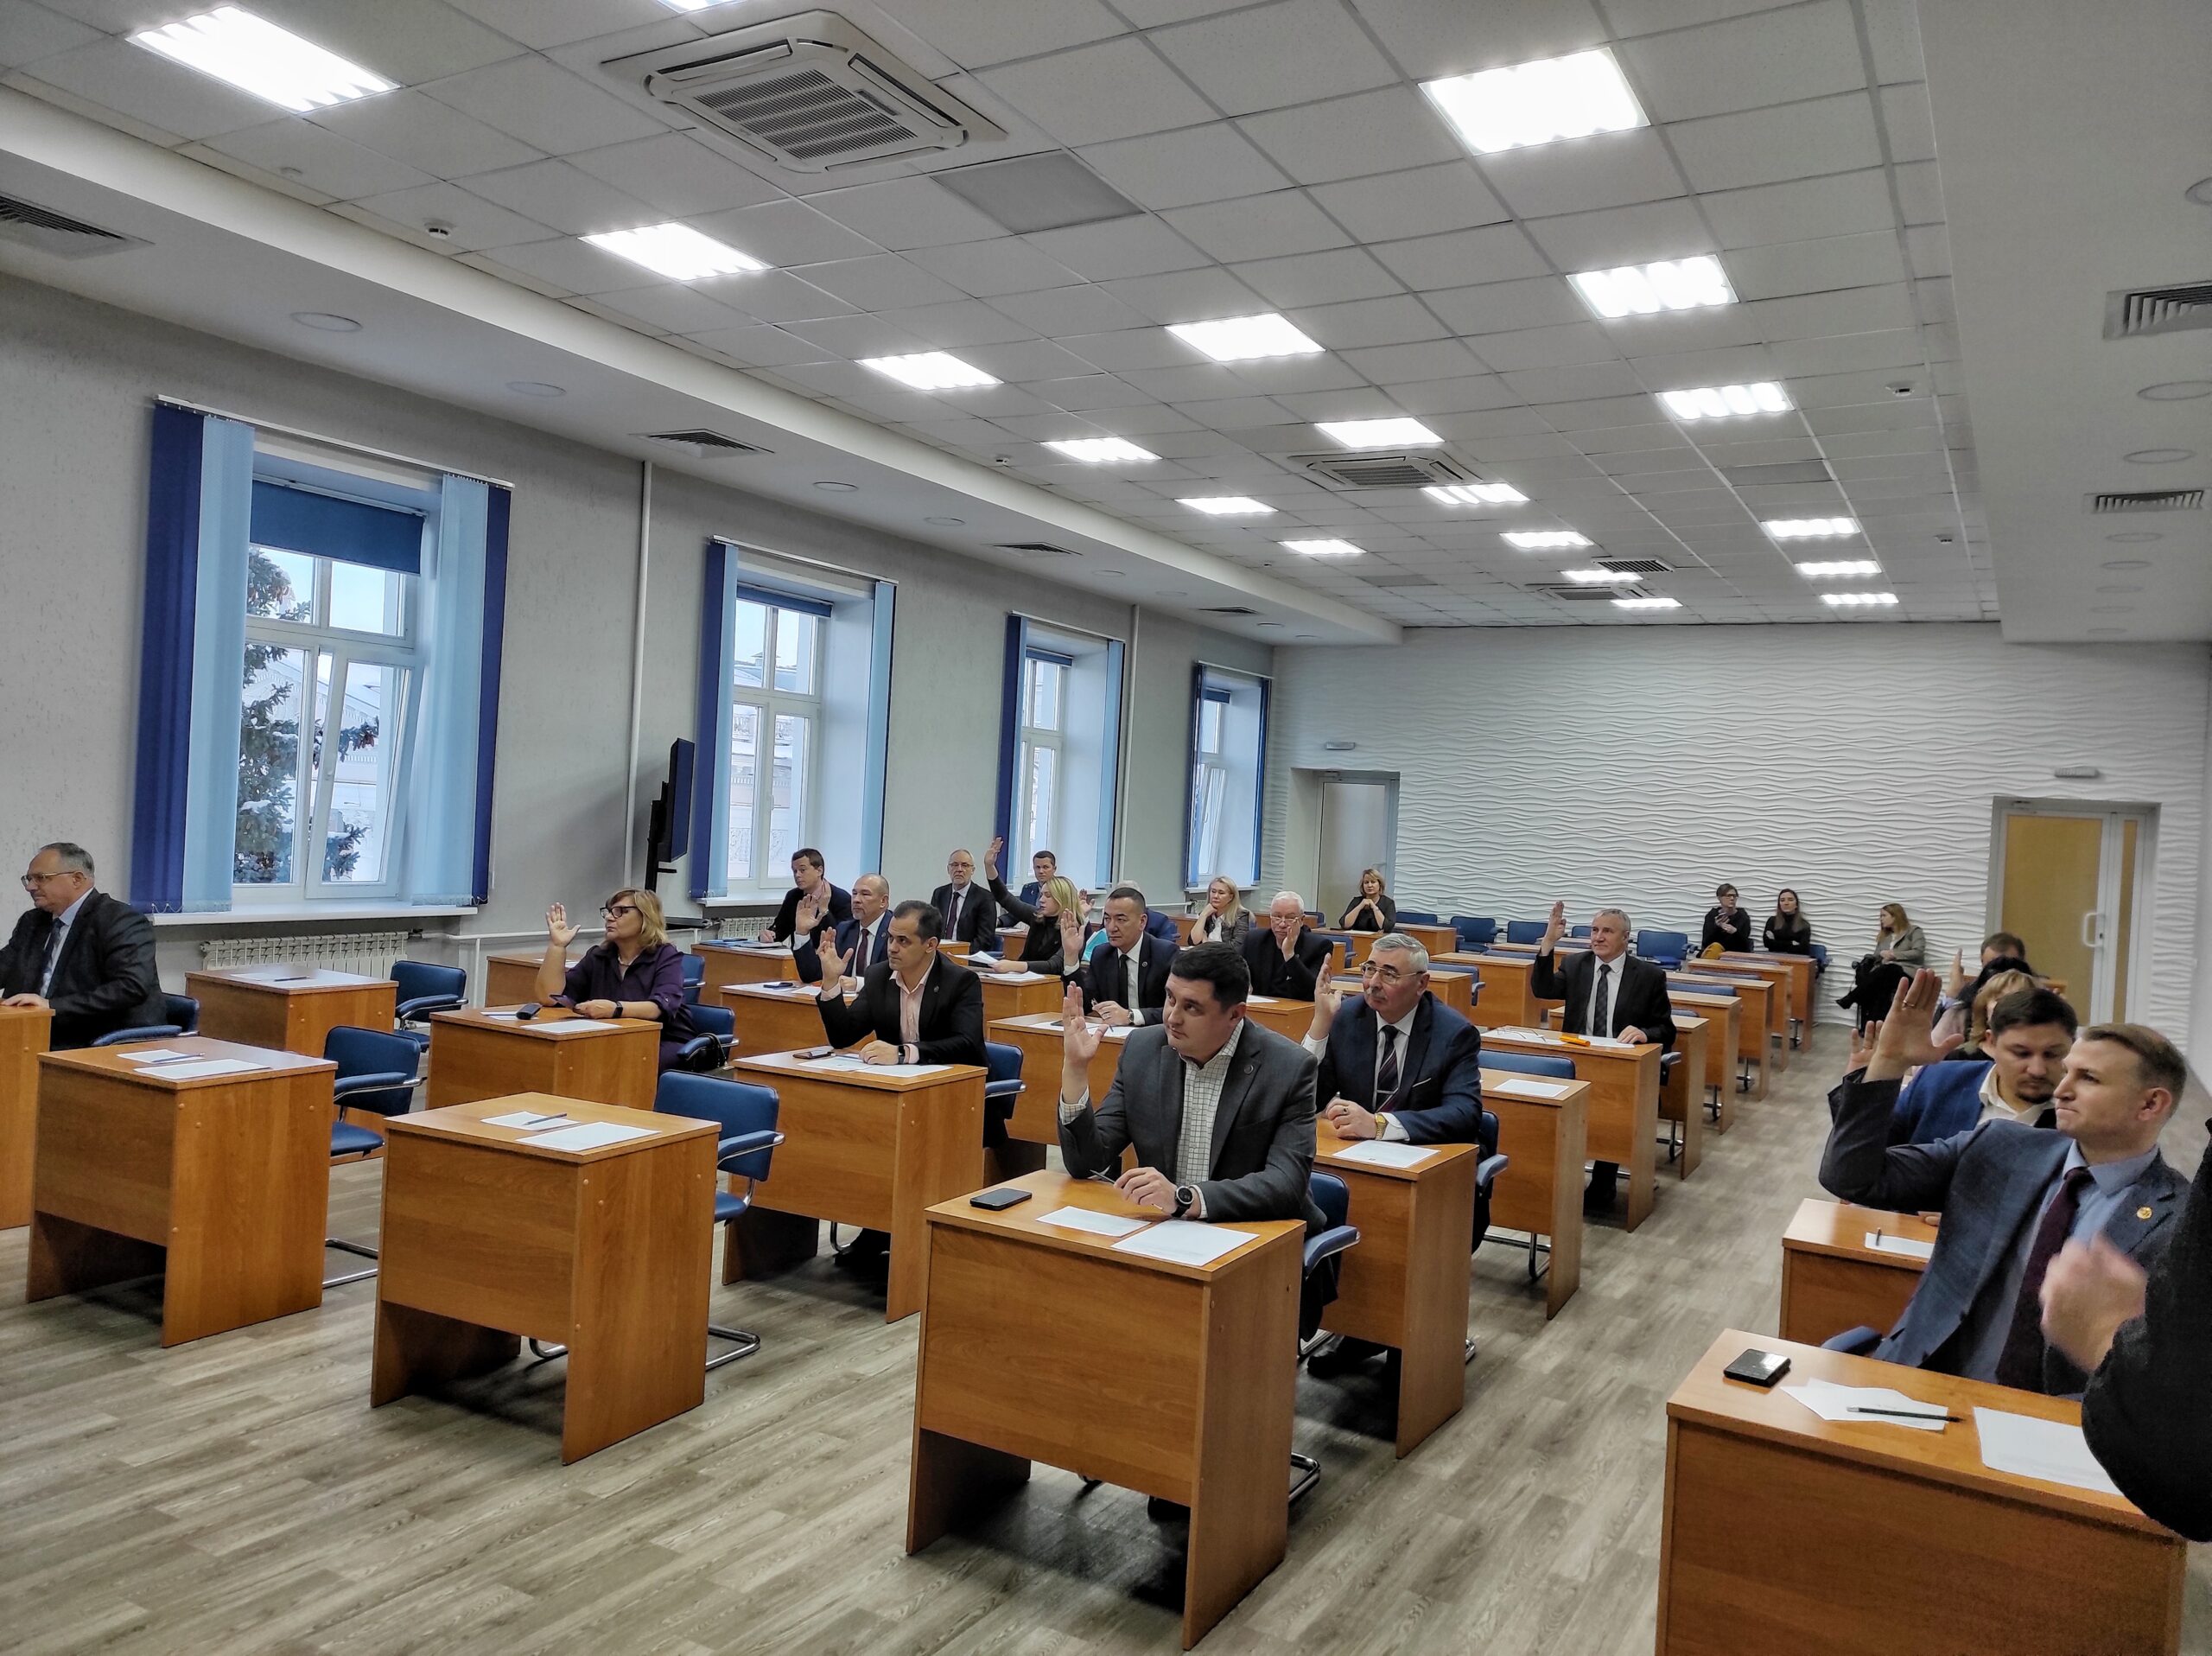 Сегодня прошла 36-я внеочередная сессия Совета депутатов ЗАТО г. Железногорск